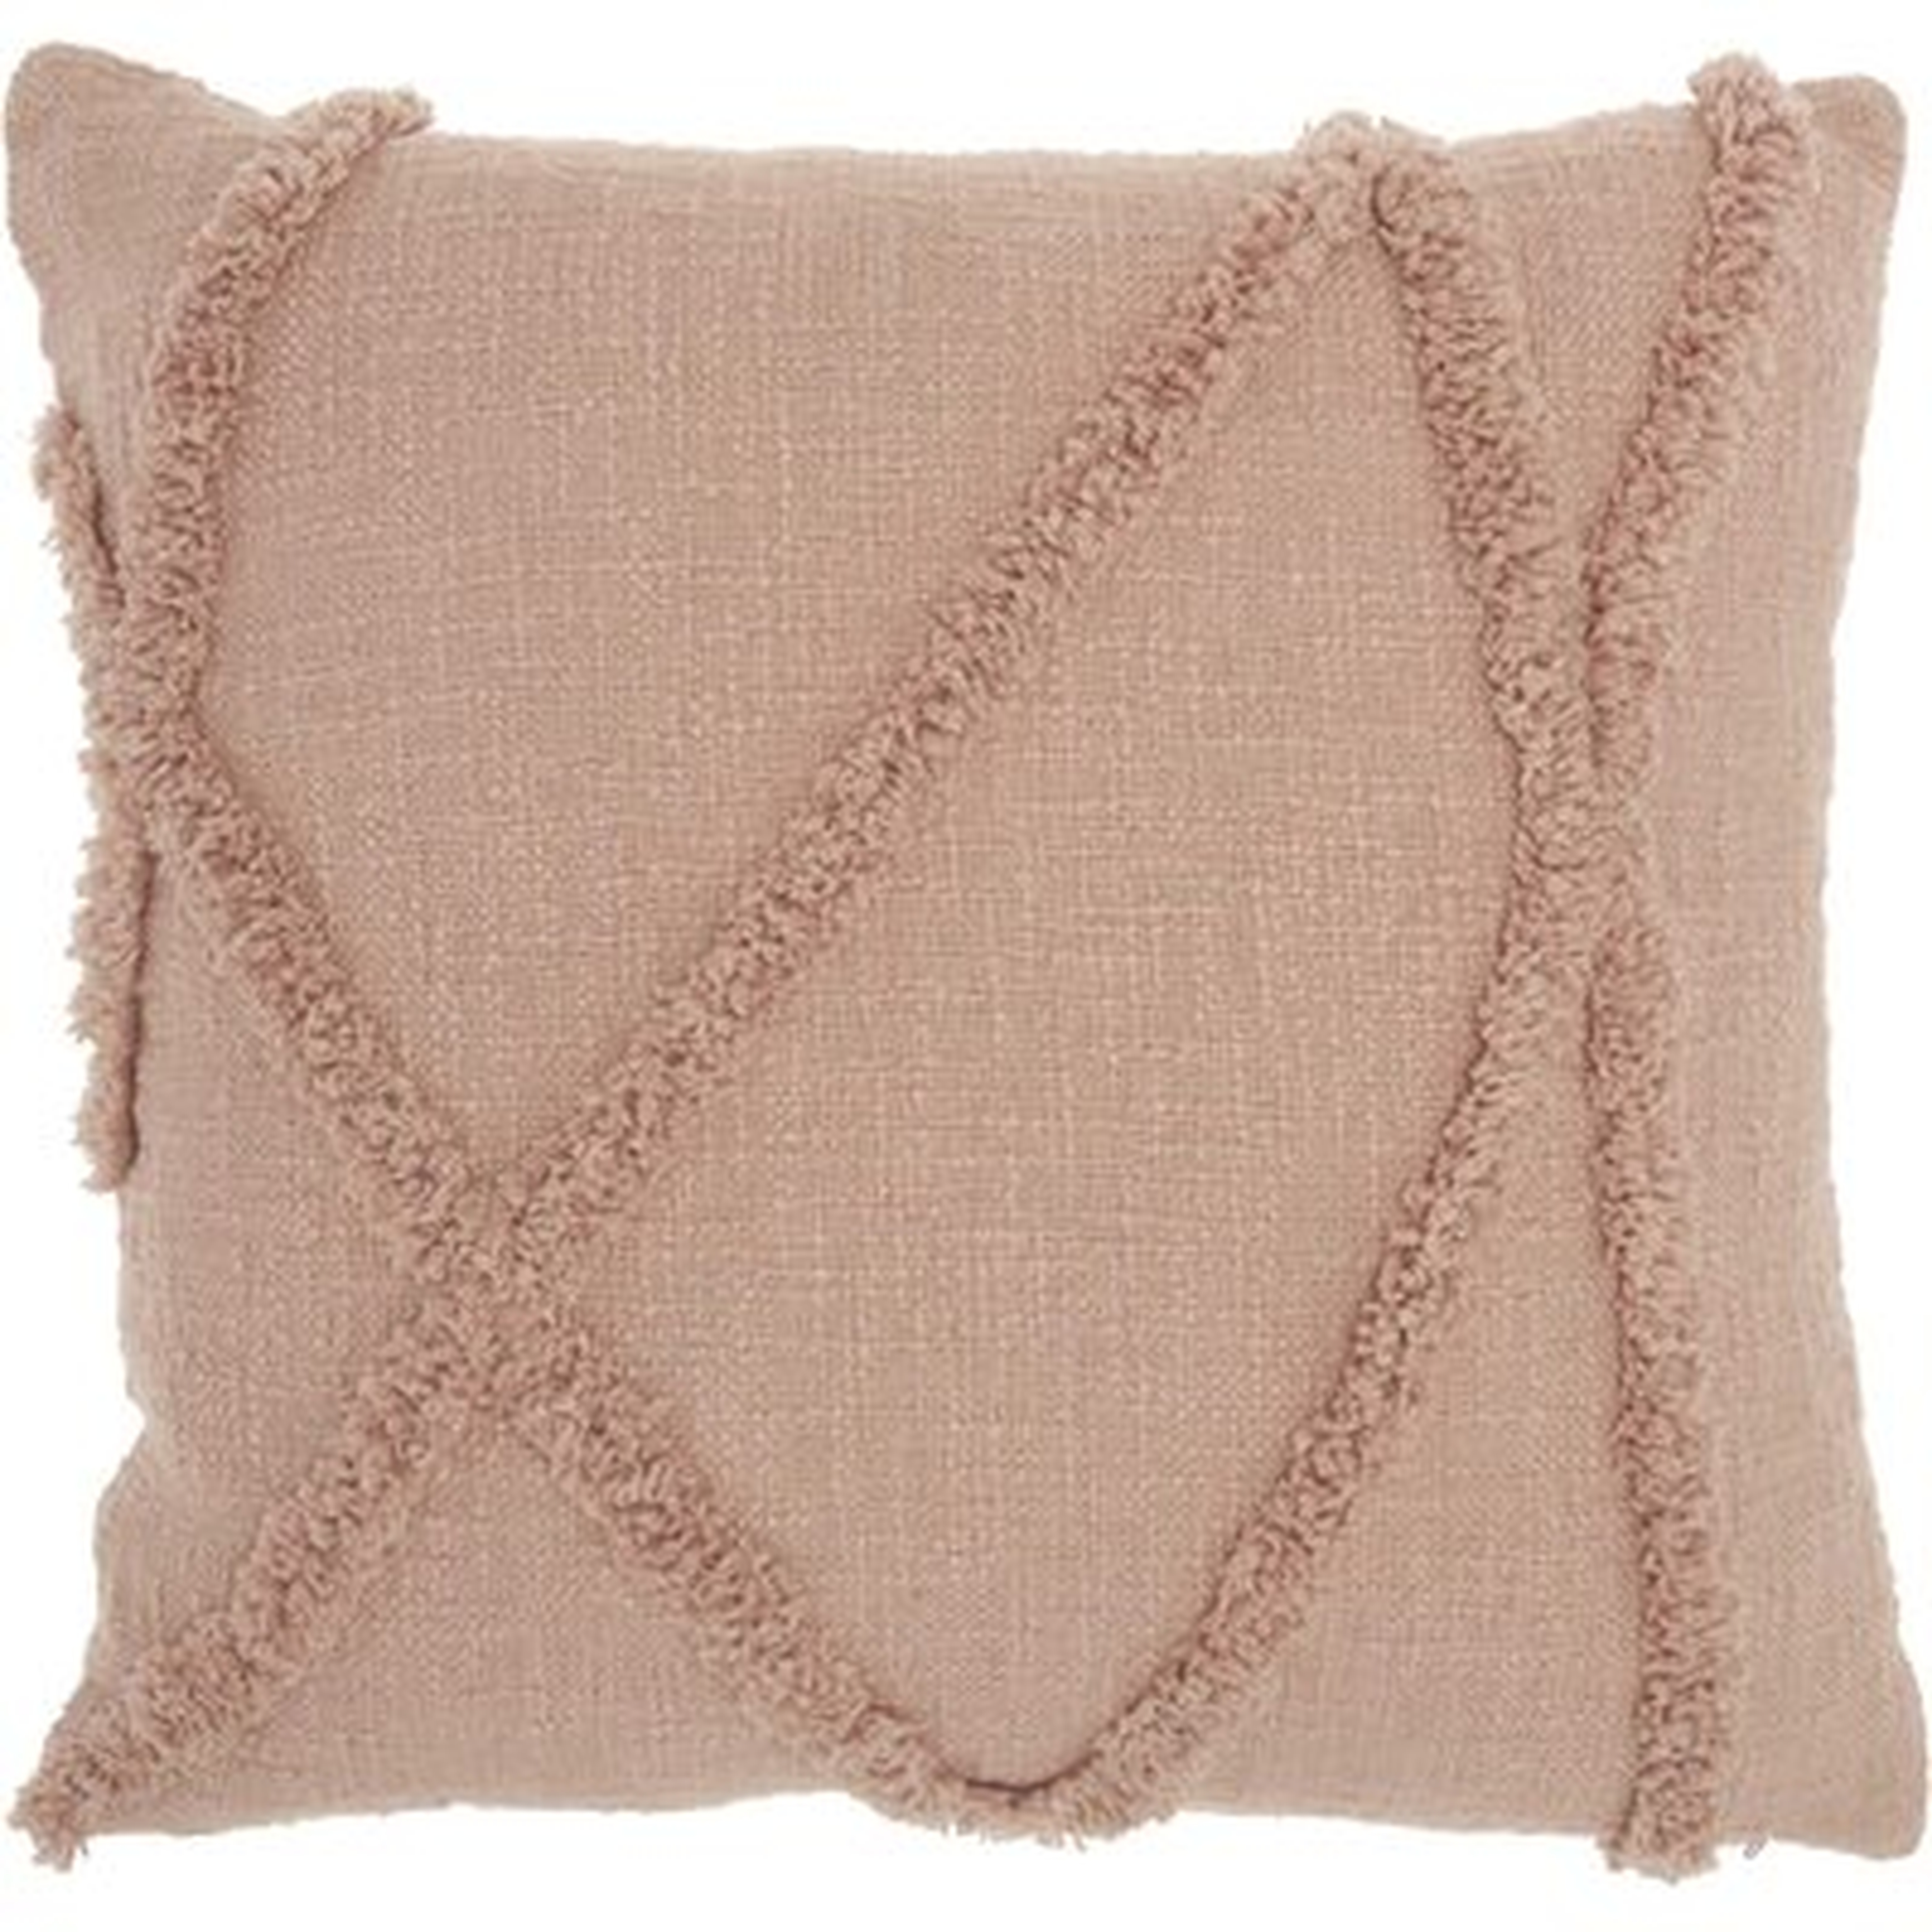 Remi Textured Striped Cotton 18" Throw Pillow - AllModern